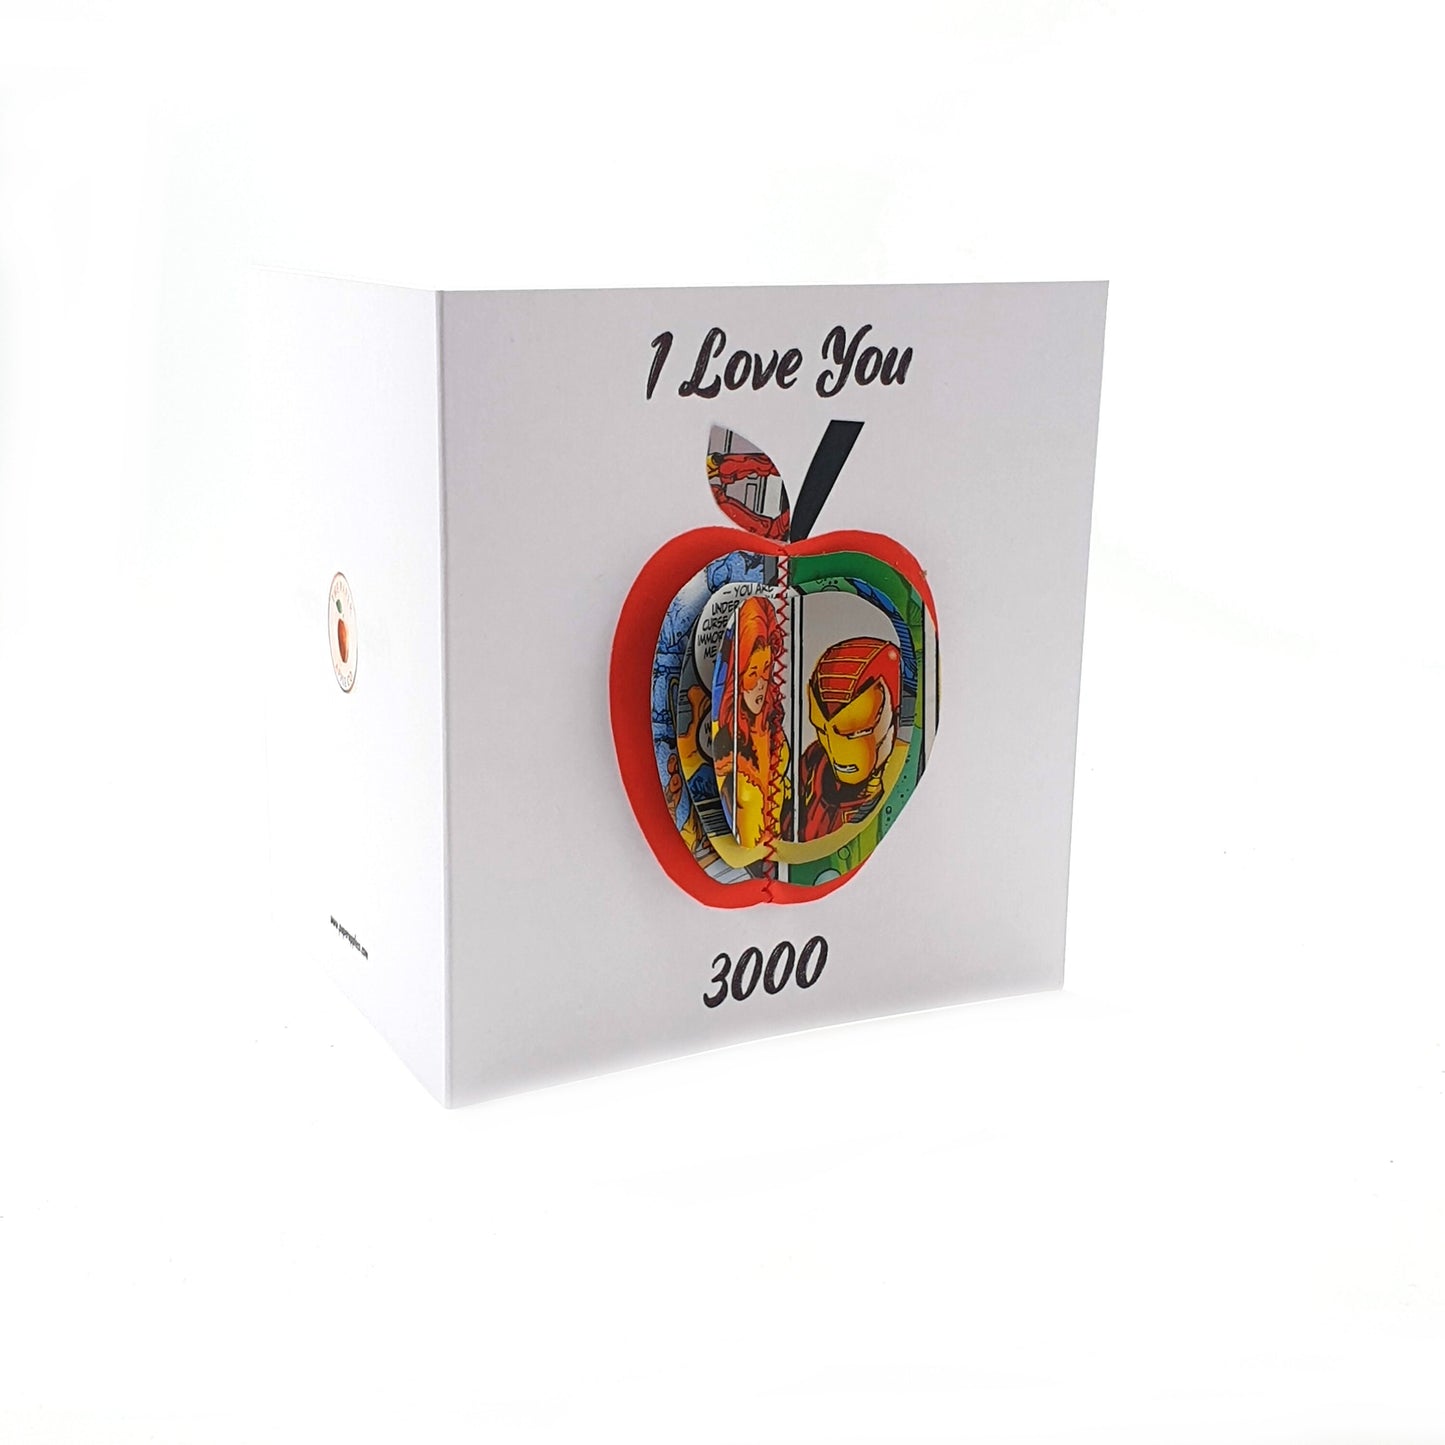 I Love You 3000 Card Gift